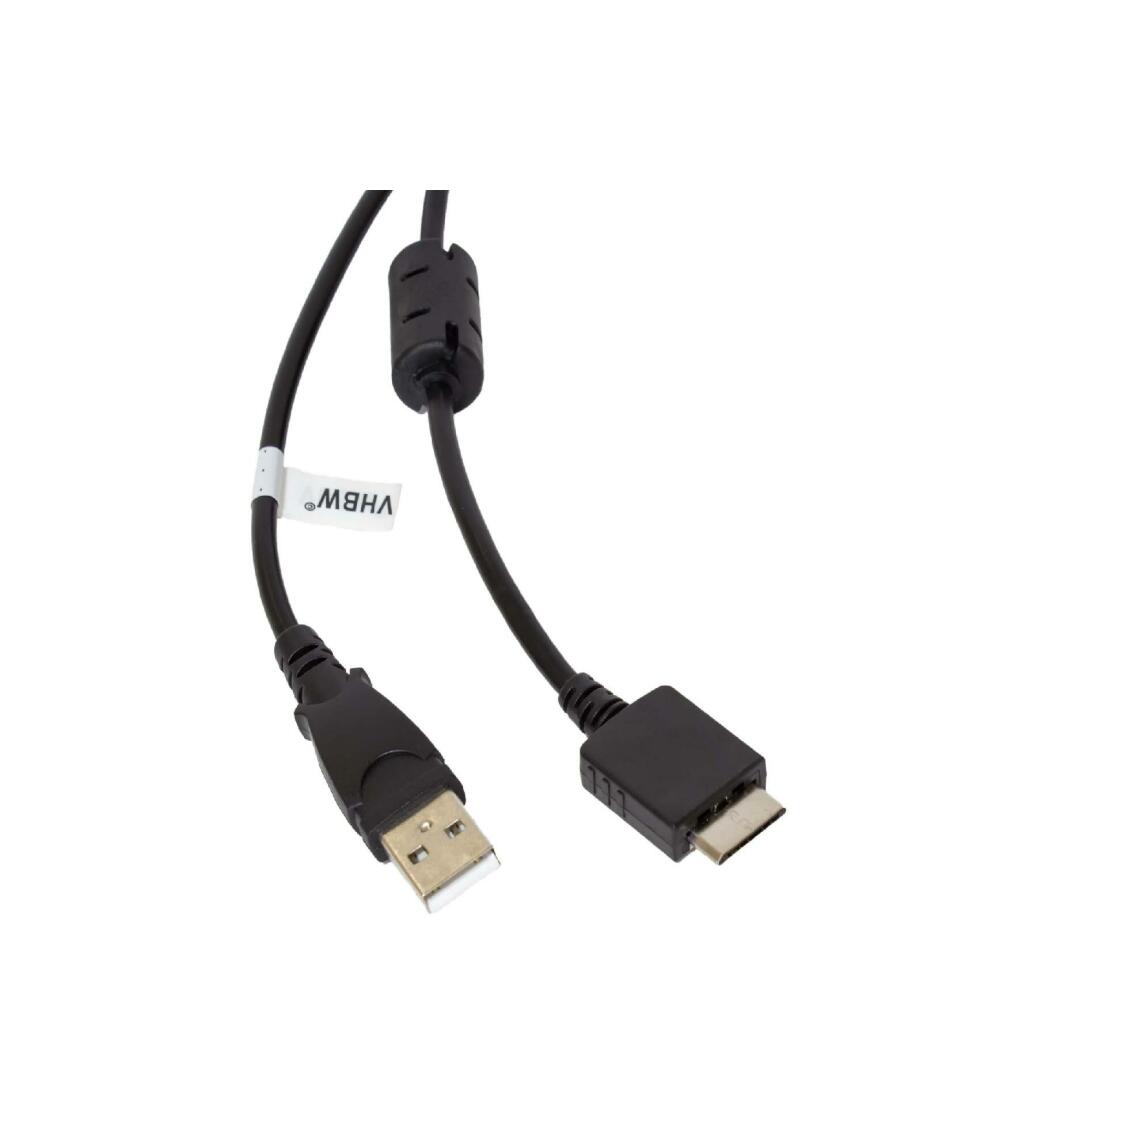 Vhbw - vhbw câble de données USB (type A sur lecteur MP3) câble de chargement compatible avec Sony Walkman NWZ-E454, NWZ-E473 lecteur MP3 - noir, 150cm - Alimentation modulaire